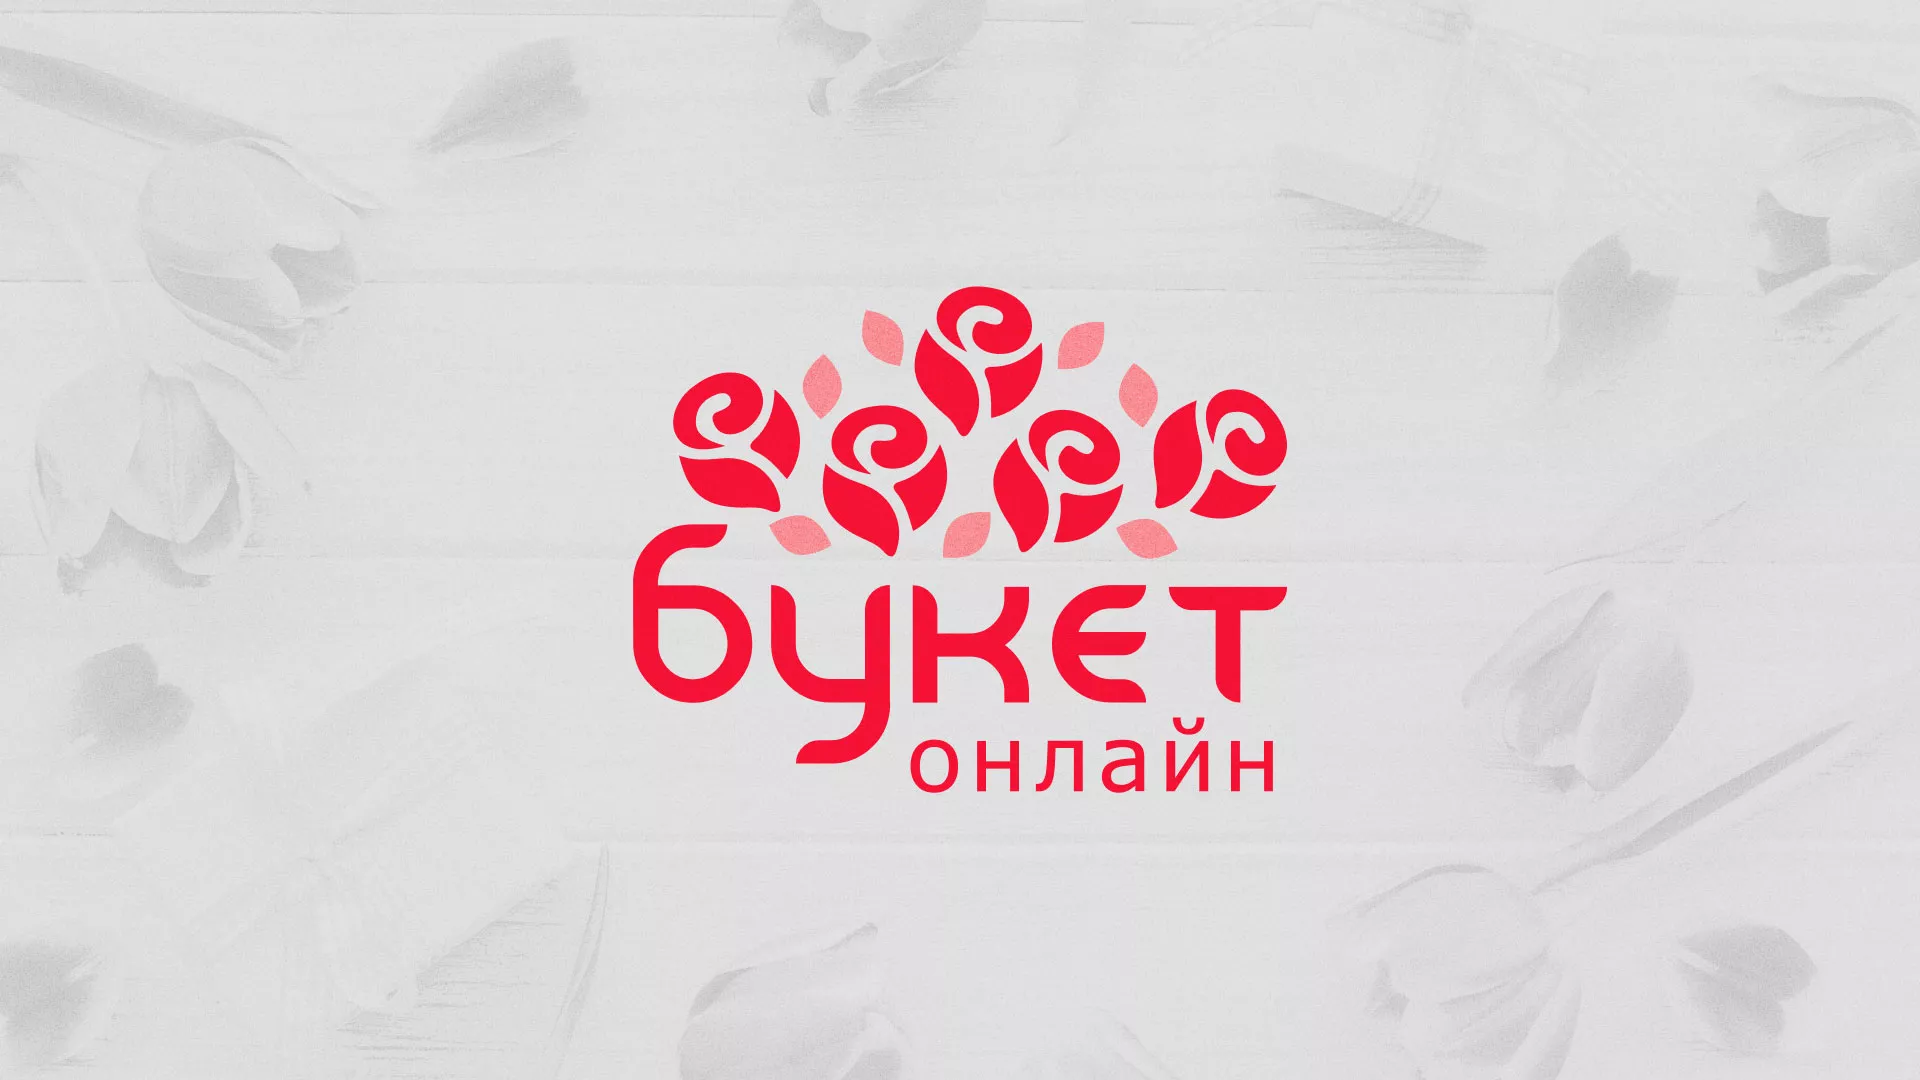 Создание интернет-магазина «Букет-онлайн» по цветам в Валуйках